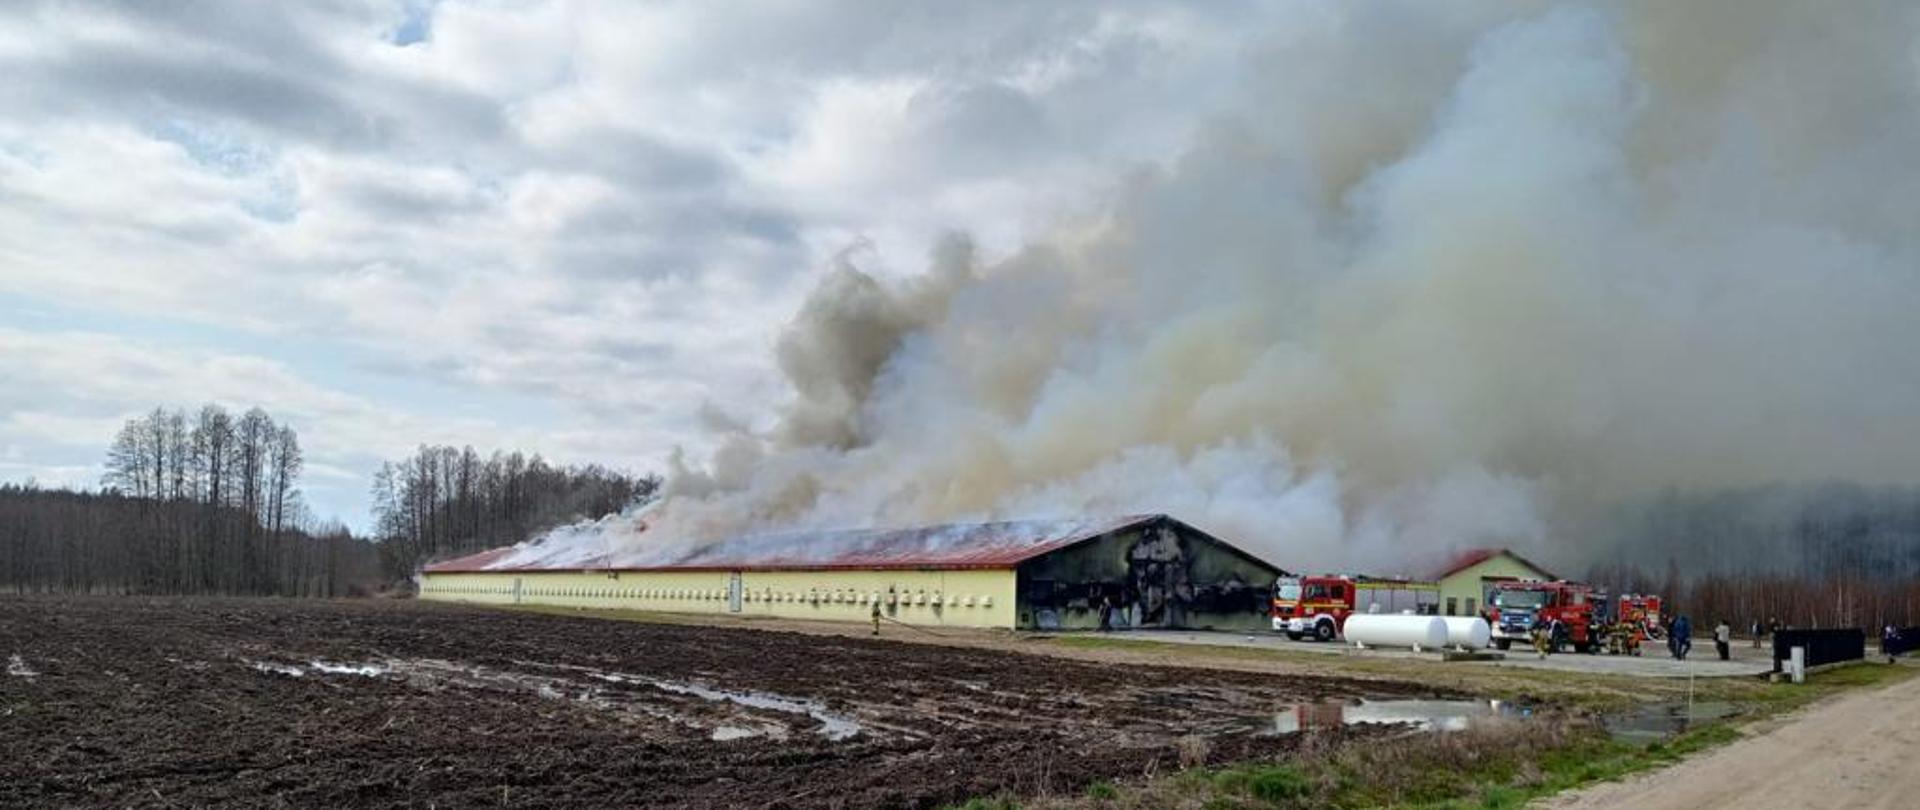 Pożar budynku inwentarskiego w miejscowości Dołki